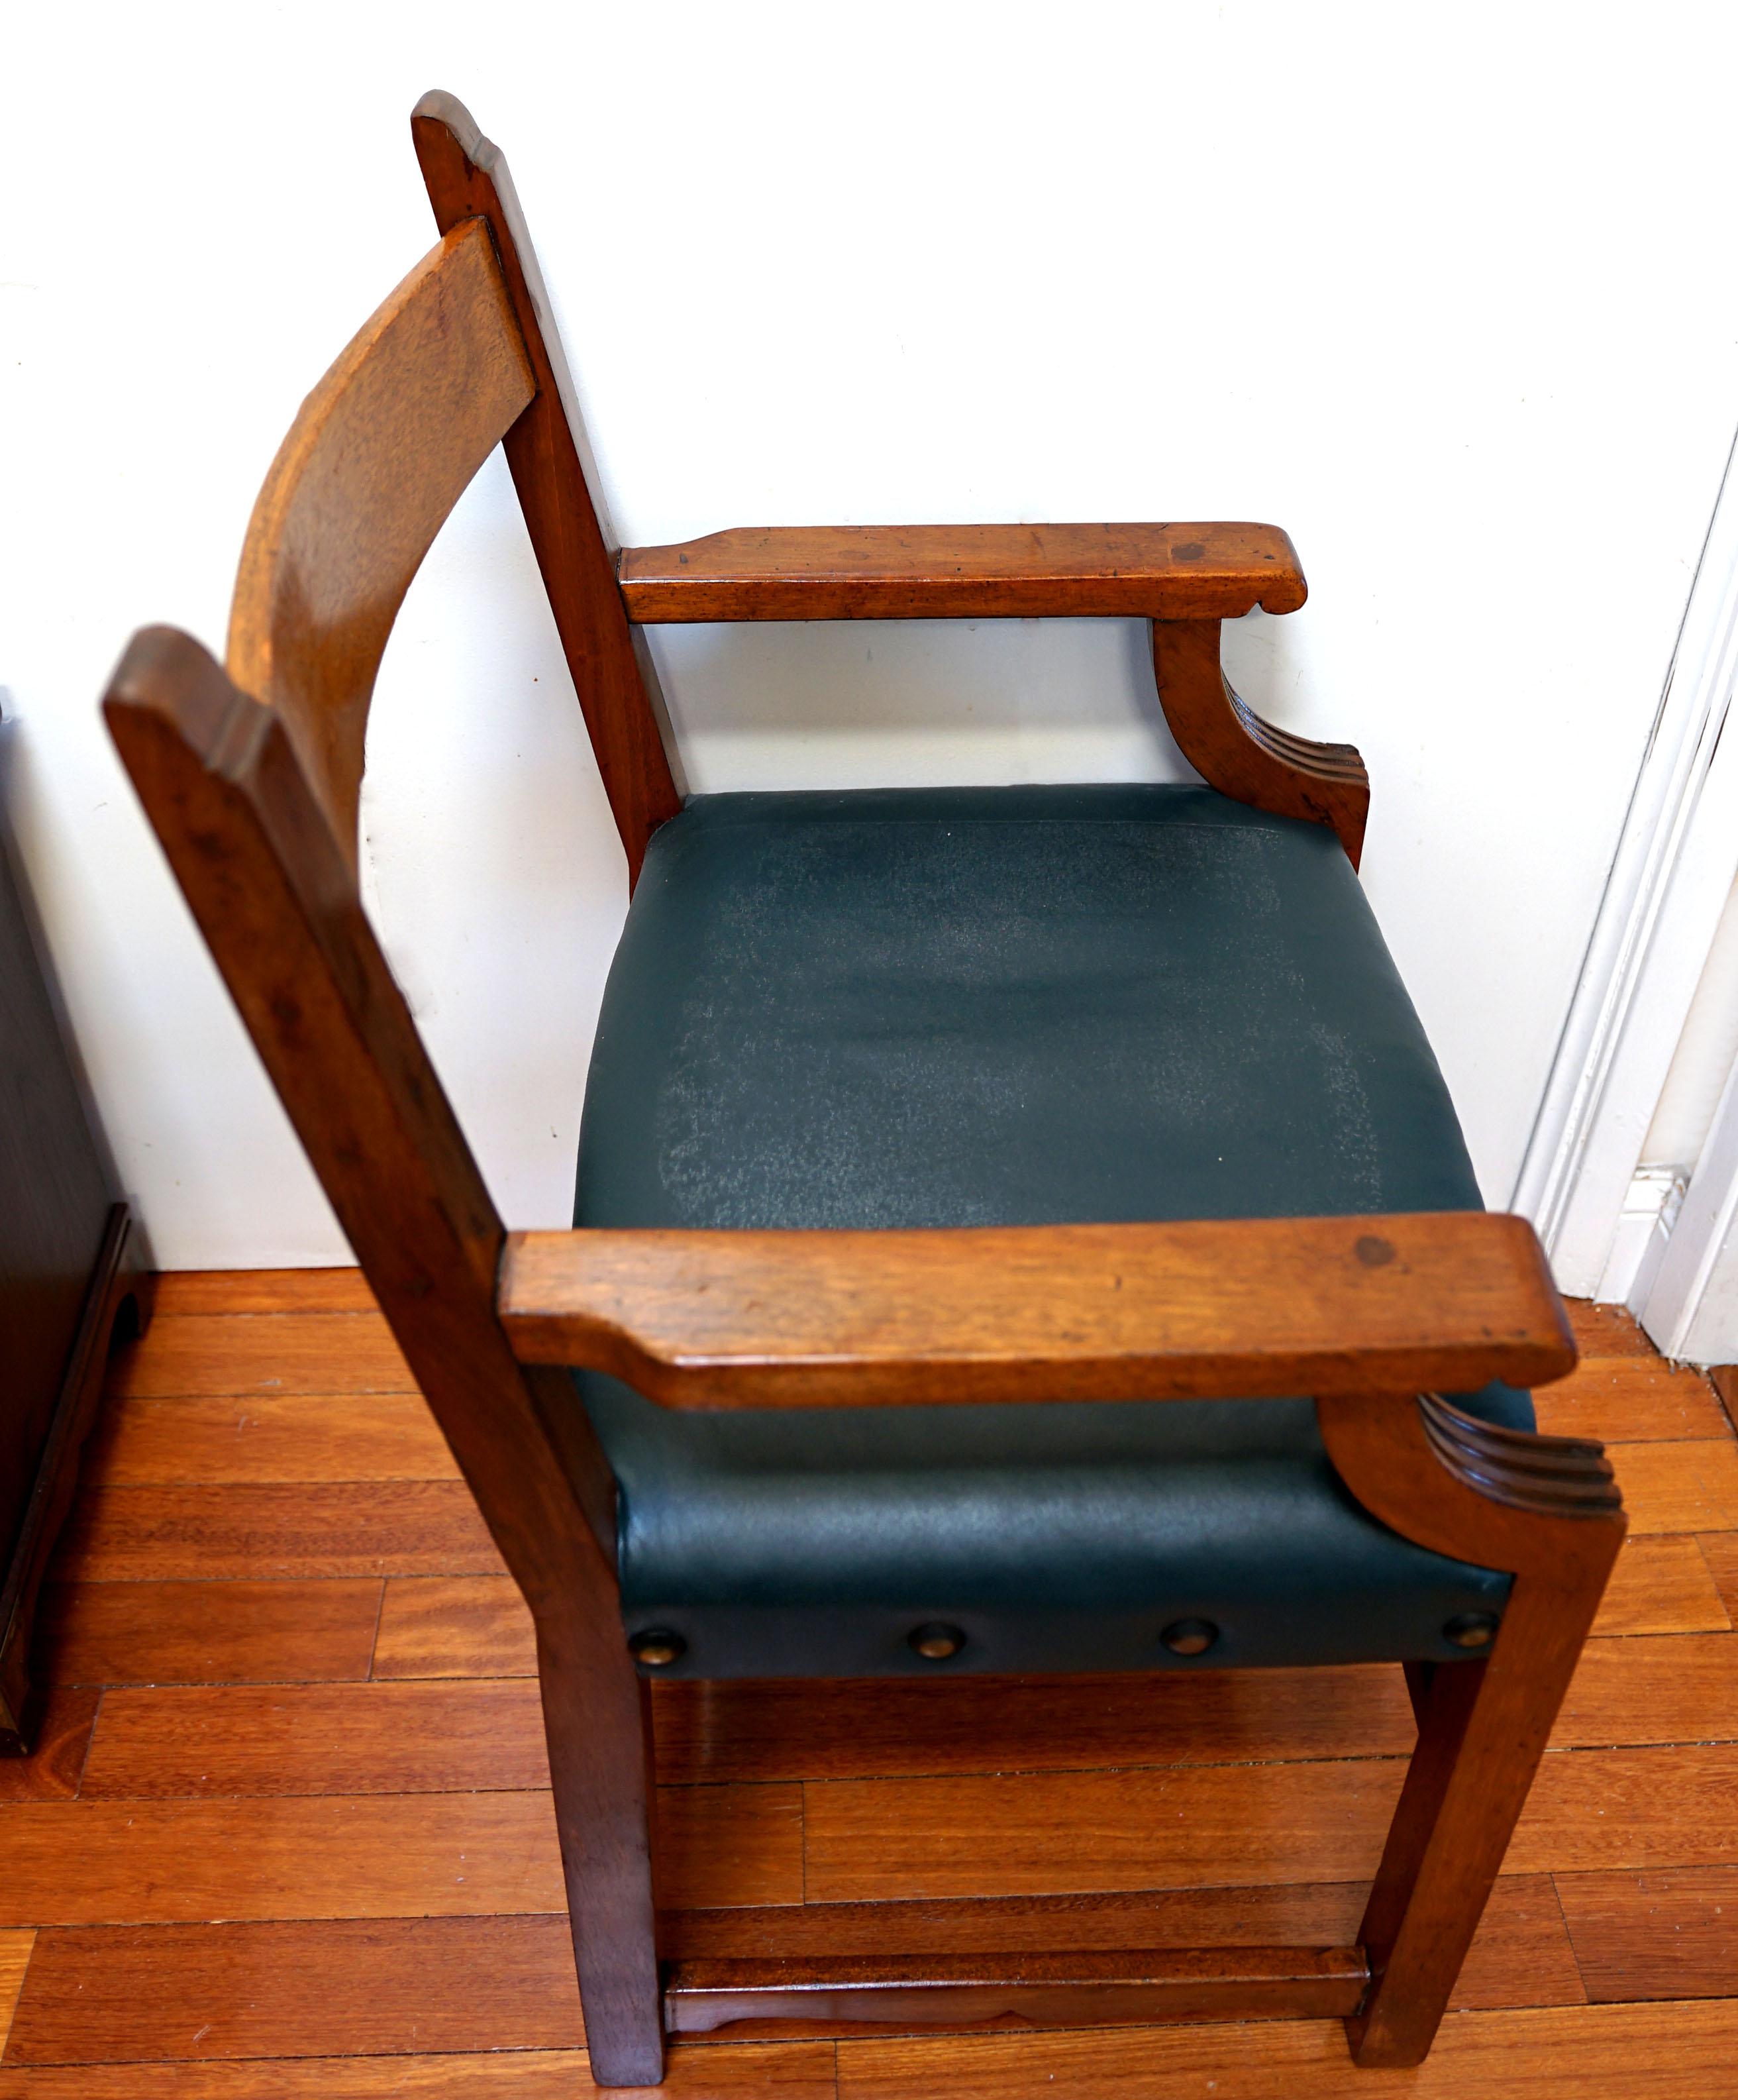 Ein offener Sessel aus geschnitzter Eiche im Regency-Stil aus dem England des späten 19. Jahrhunderts mit modernem Touch ist ein wahres Designwunder. Das Holz ist mit der Zeit schön gealtert und hat eine glänzende Patina. Der Stuhl ist stabil und